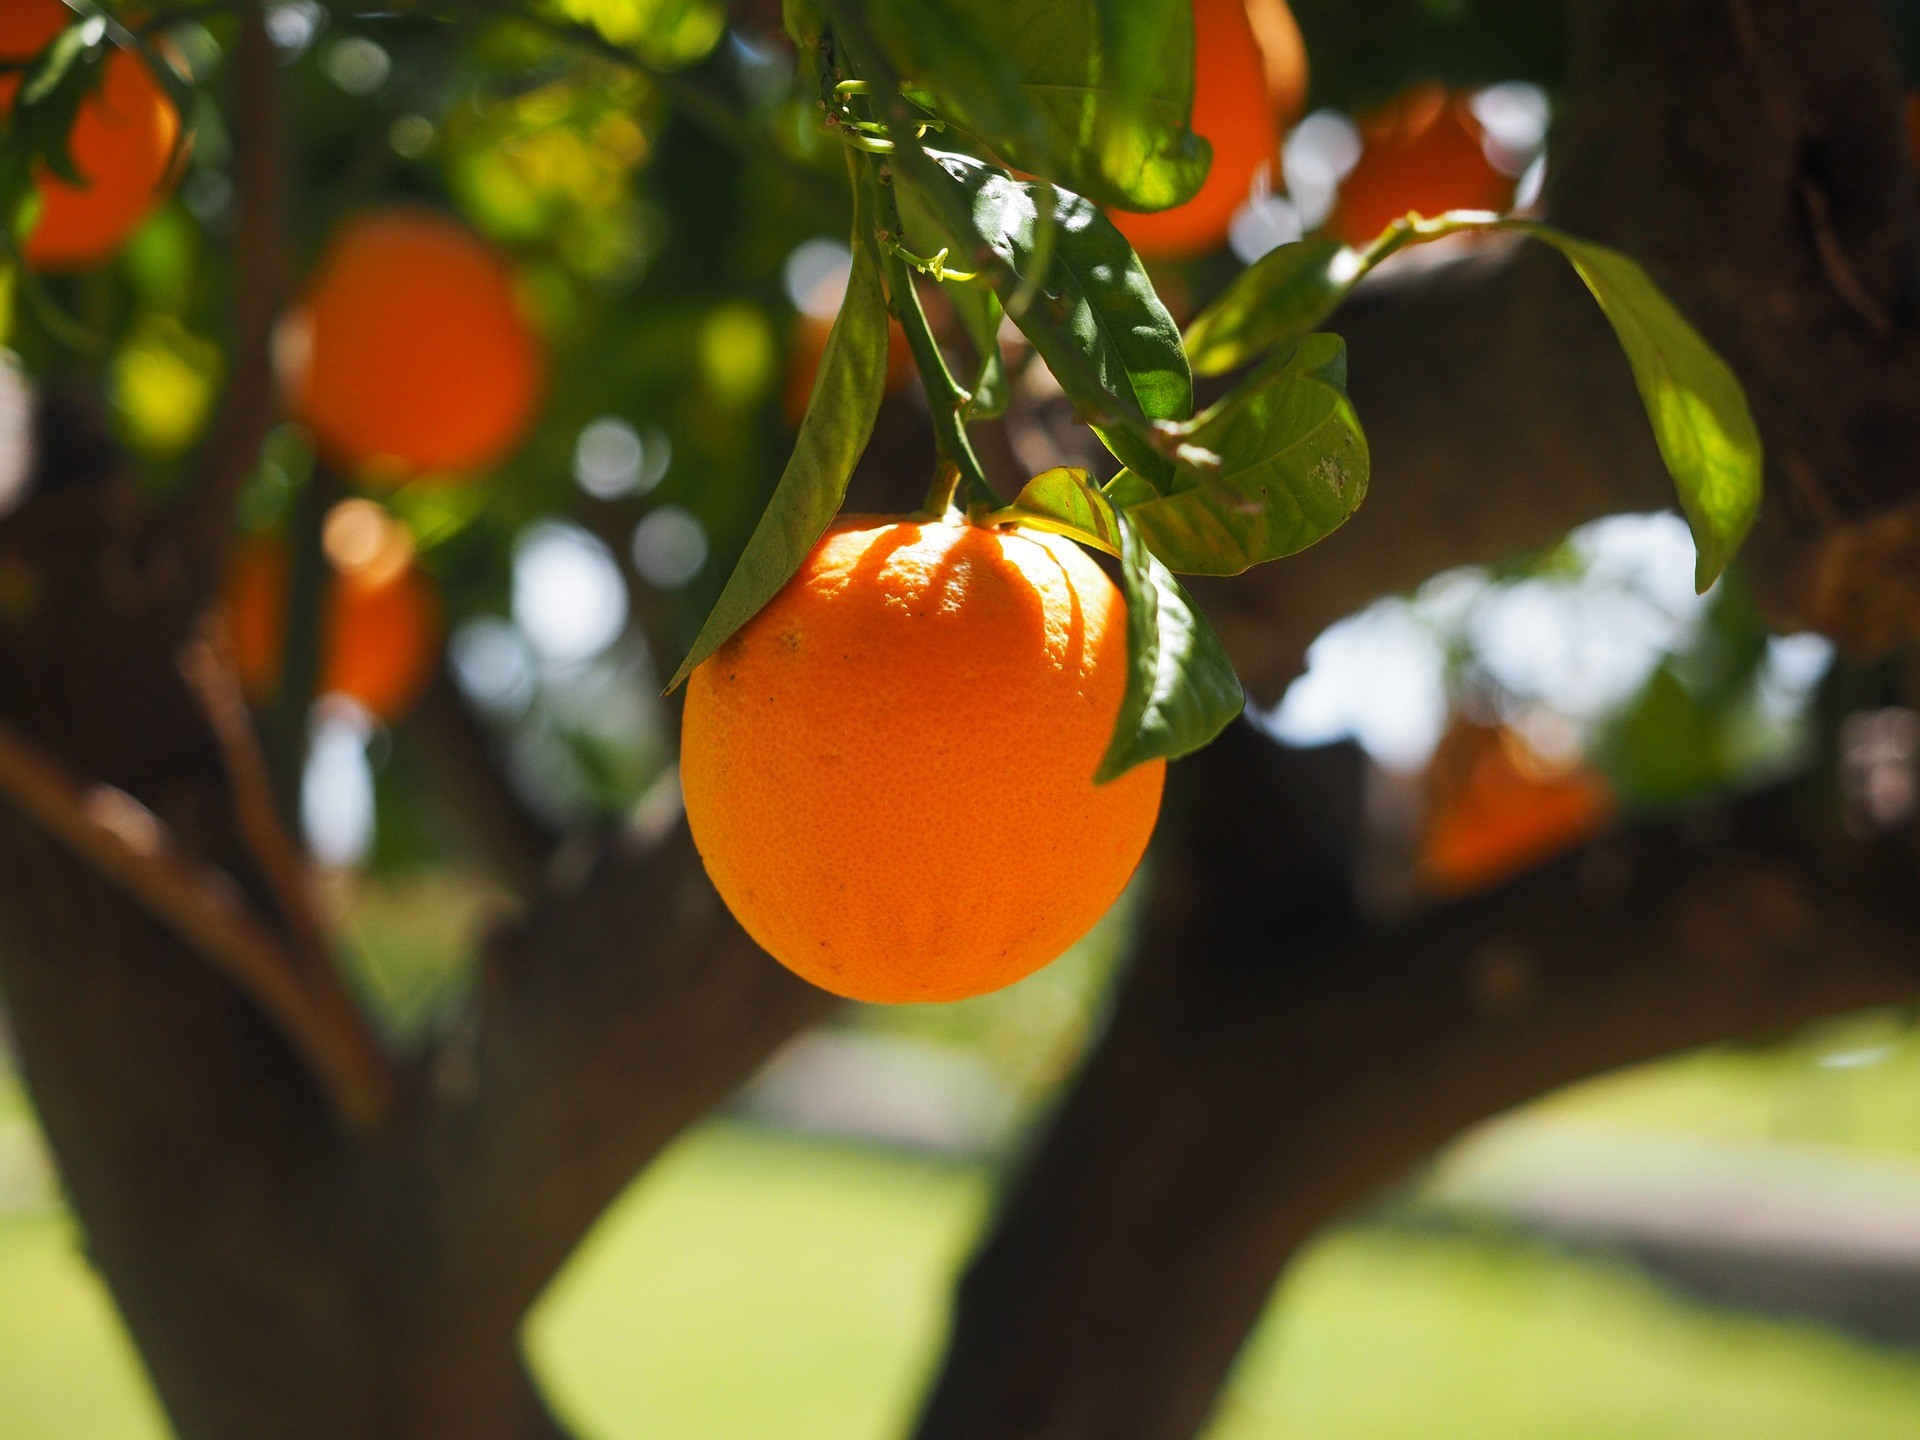 I den här handelsguiden utforskar vi sätten att handla med apelsinjuice, där du kan börja handla med råvaran. Läs vidare för att ta reda på vad experter tycker om apelsinjuice som en råvara på den globala marknaden.